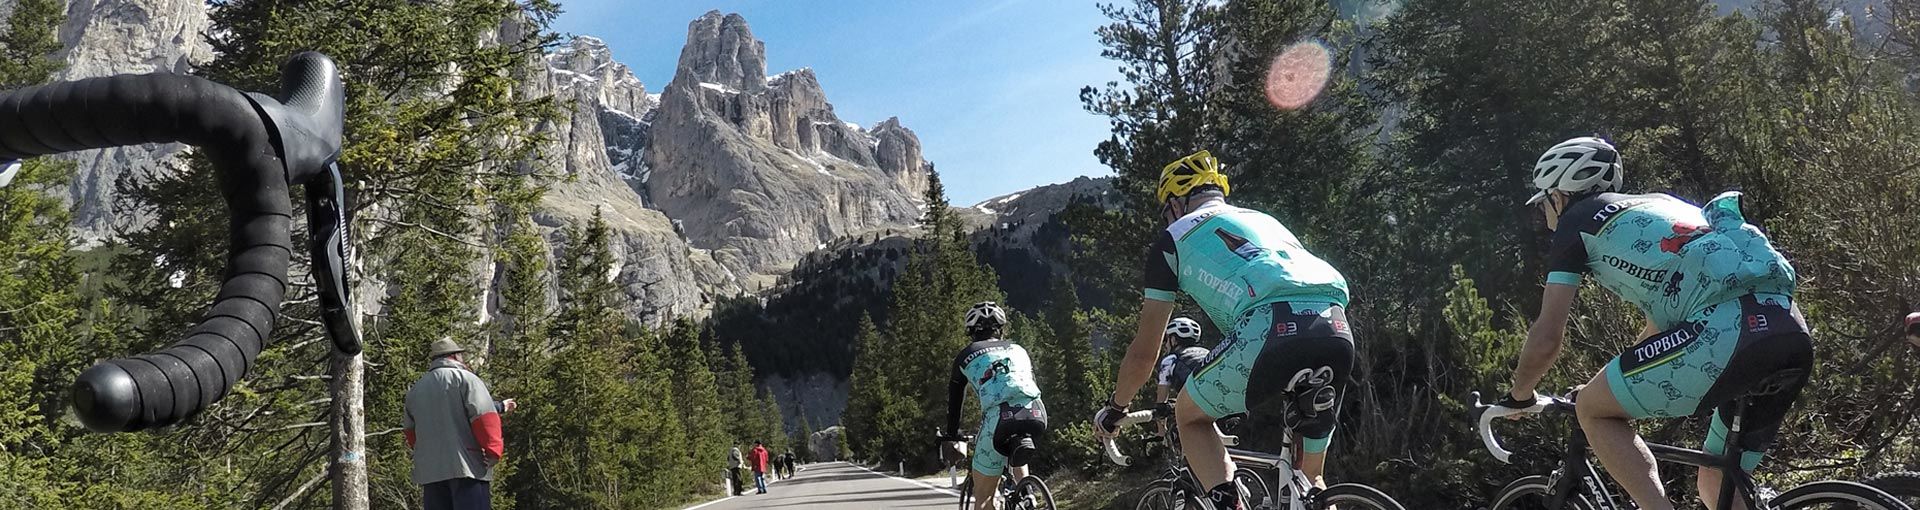 Topbike Tours - Italian Climbs